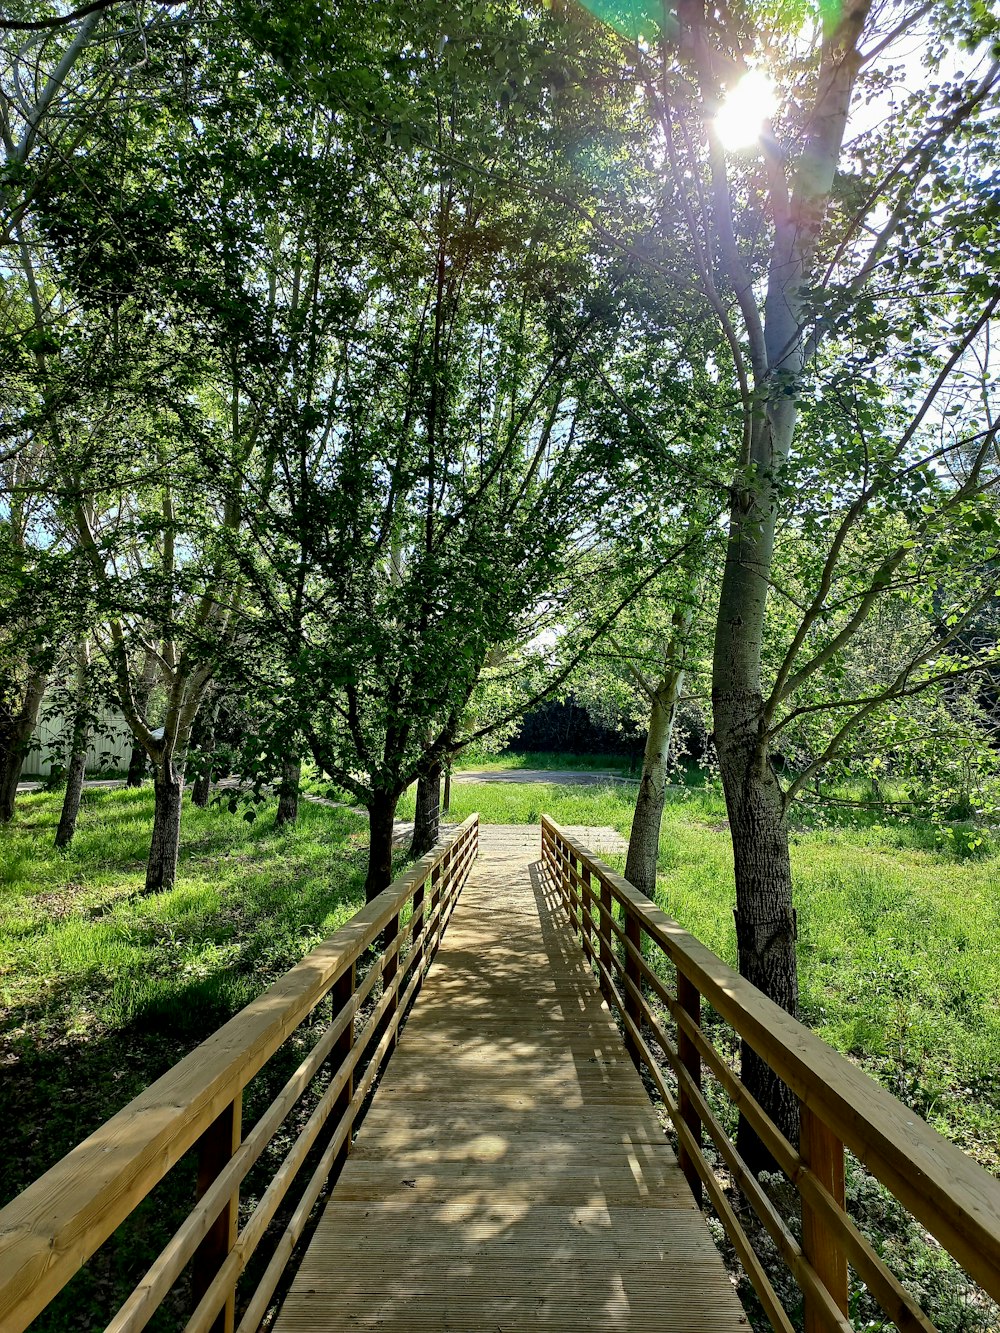 a wooden bridge over a lush green field